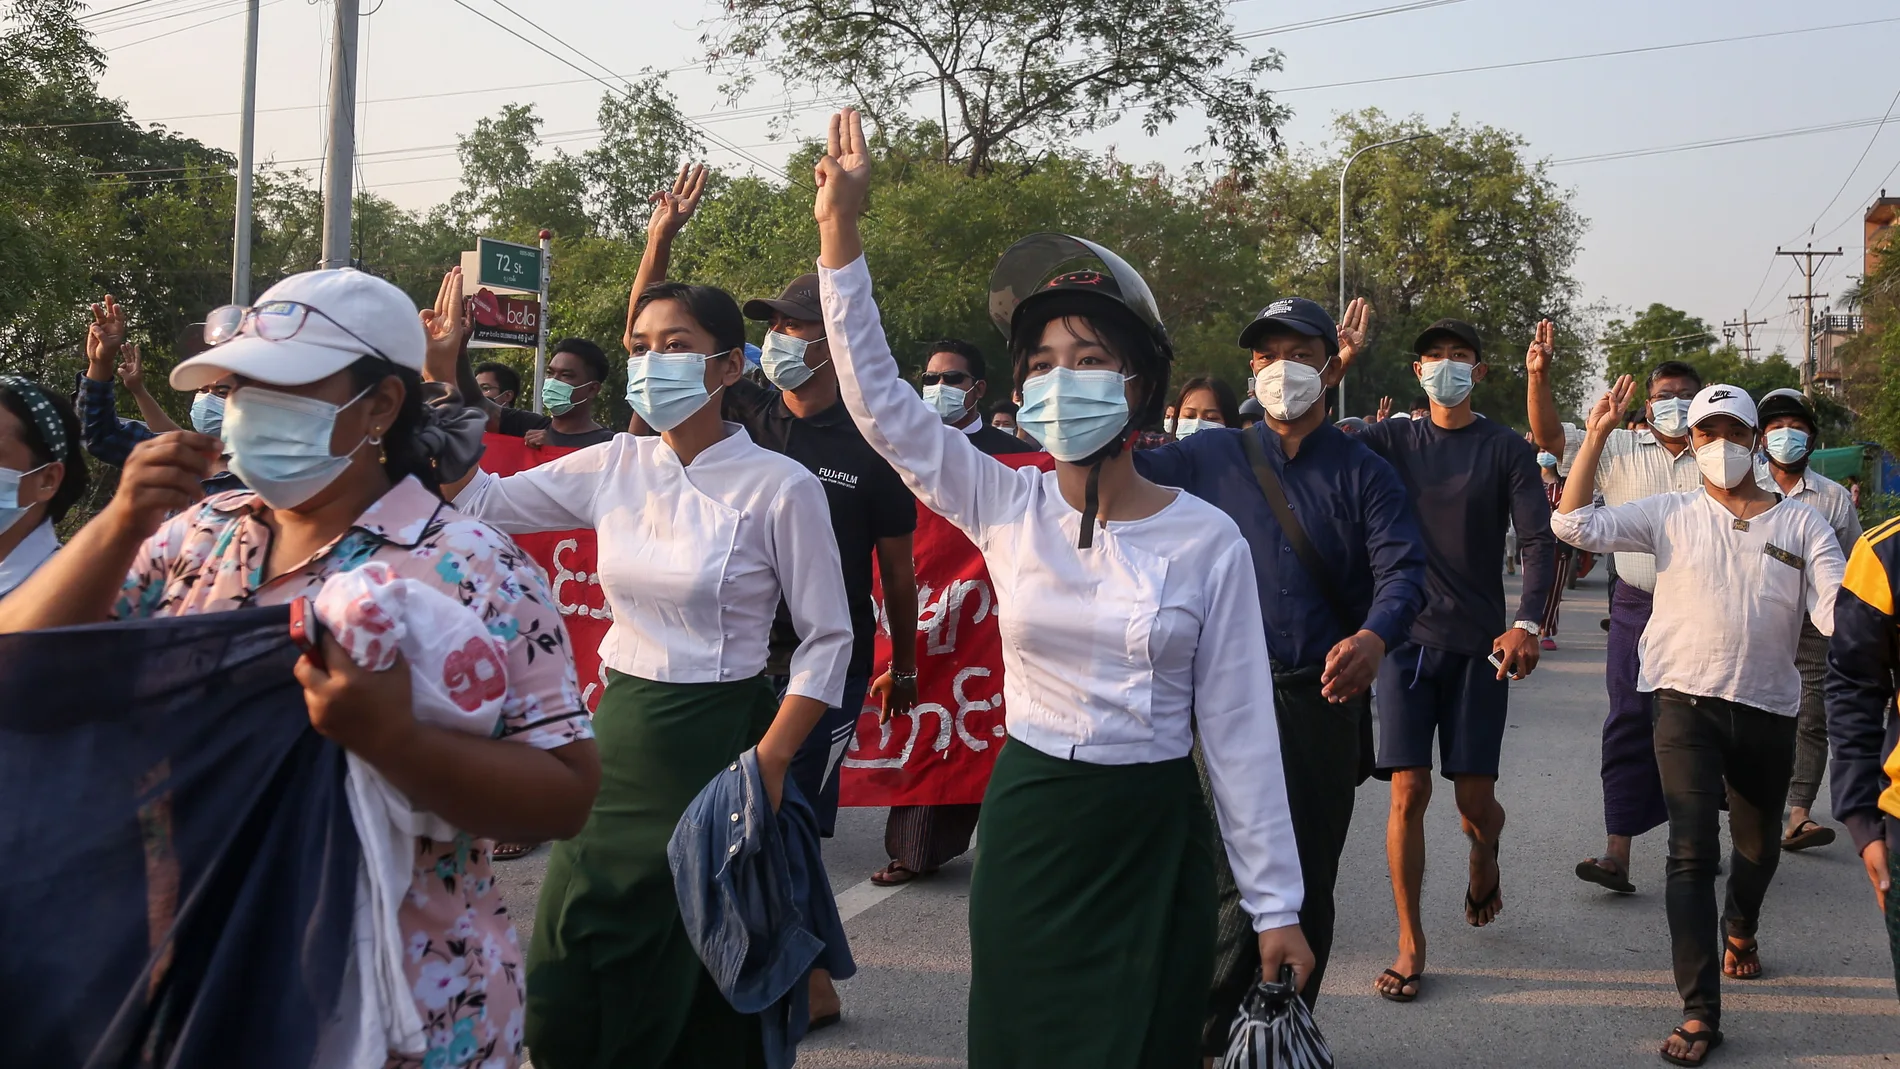 Los manifestantes saludan con tres dedos durante una protesta antimilitarista en Mandalay, Myanmar, el 10 de mayo de 2021